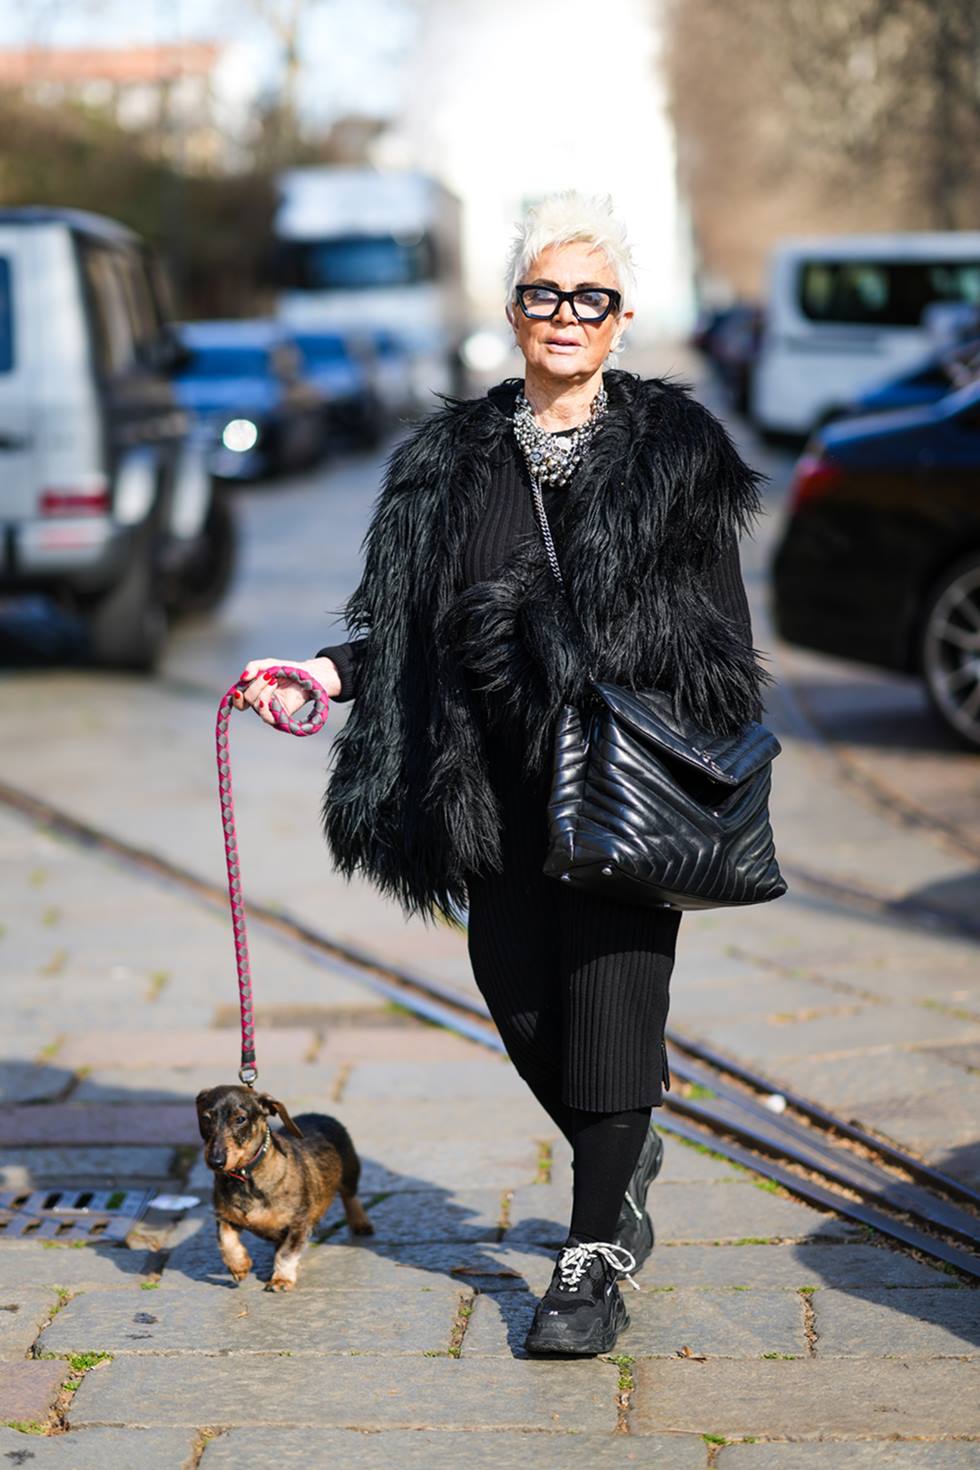 Mulher idosa e branca, de cabelo branco curto, andando pela rua, passeando com seu cachorro. Ela usa casaco e calça, além de um sobretudo peludo, tudo na cor preta, e uma bolsa transversal preta de couro da marca Saint Laurent. O modelo se chama Loulou. - Metrópoles